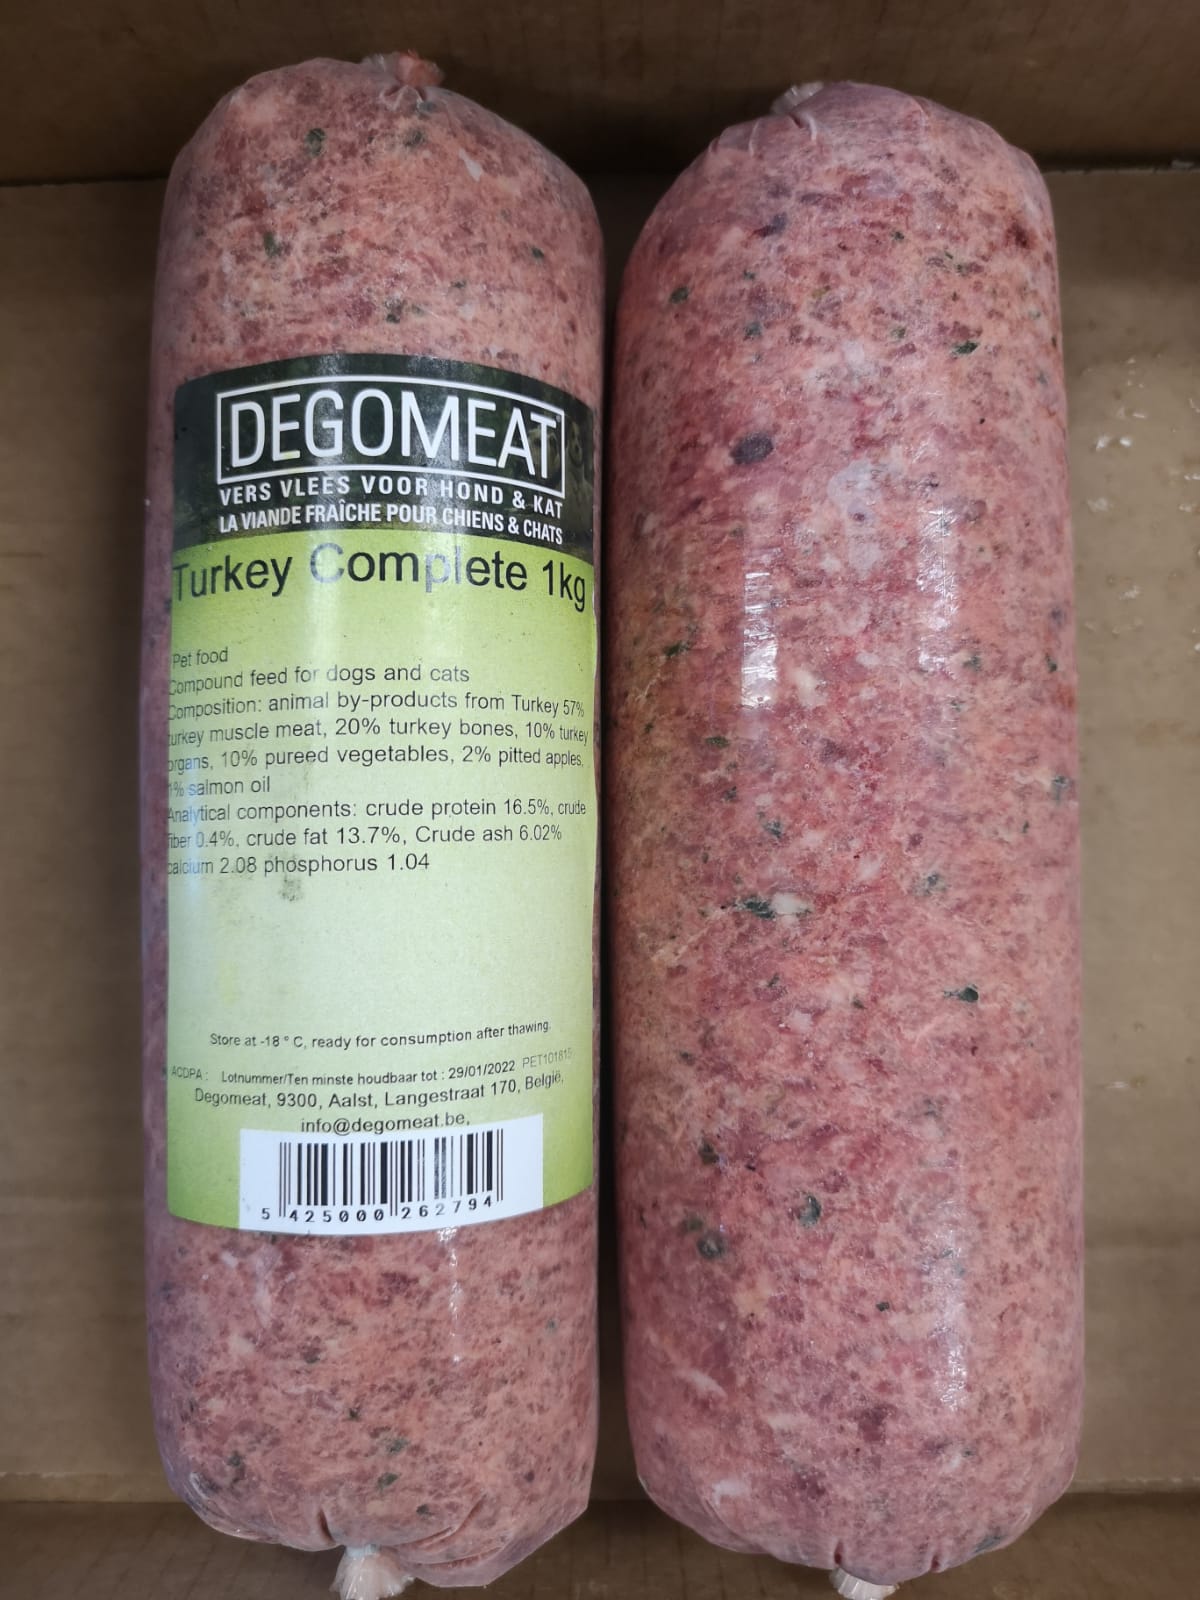 Degomeat Turkey Complete 10 x 1kg